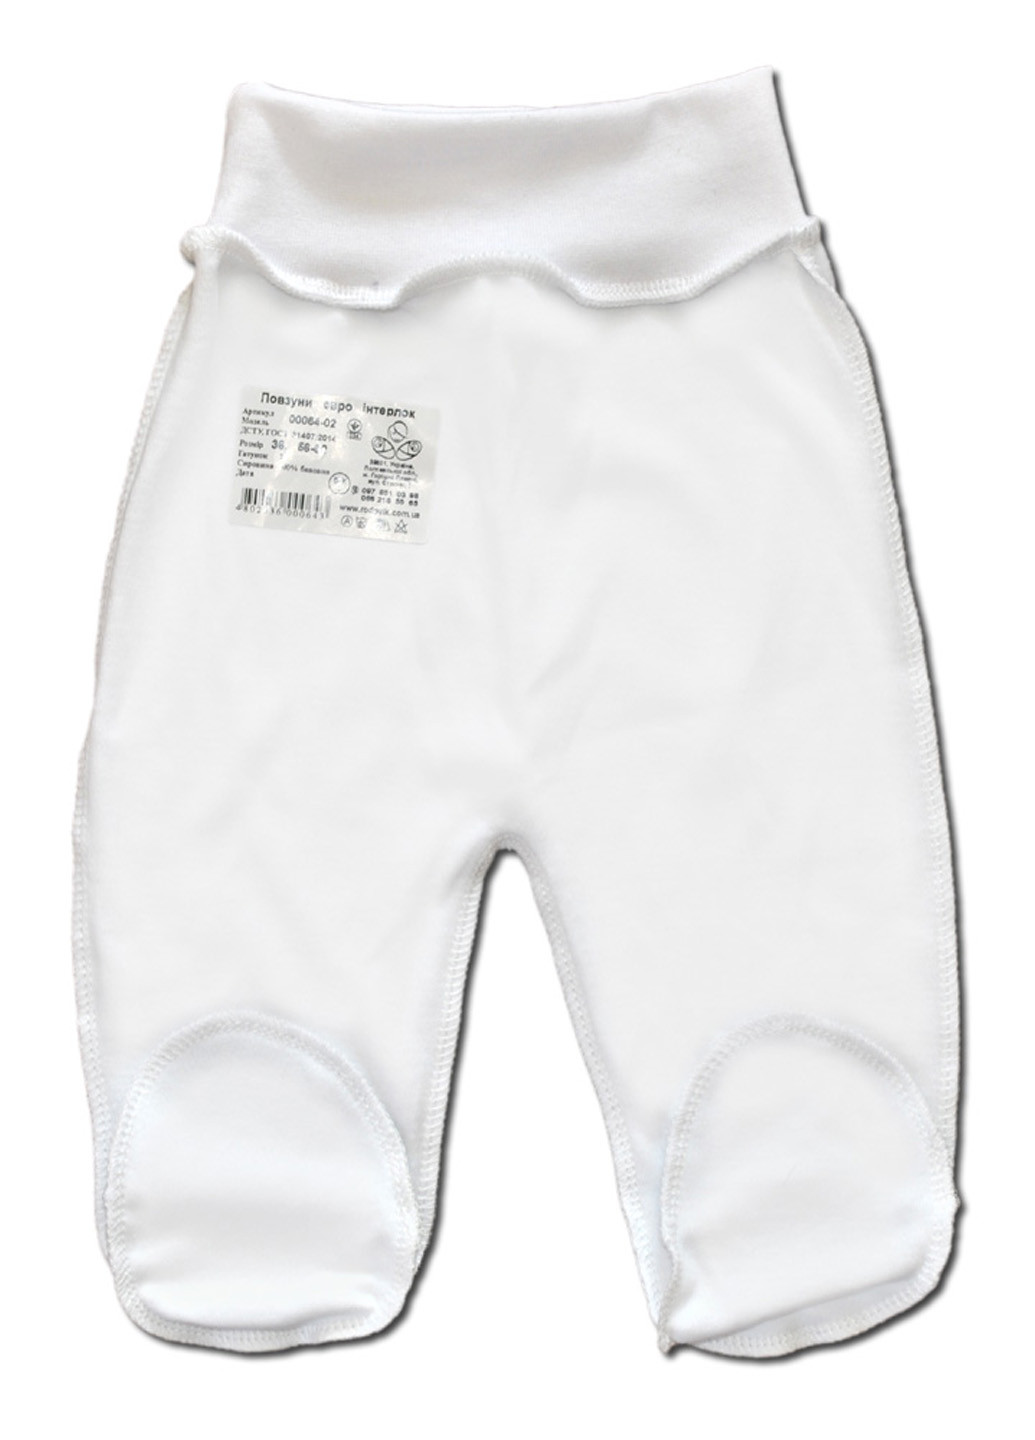 Белый демисезонный комплект для новорожденных №7 (5 предметов) тм коллекция капитошка белый Родовик комплект 07-БХ